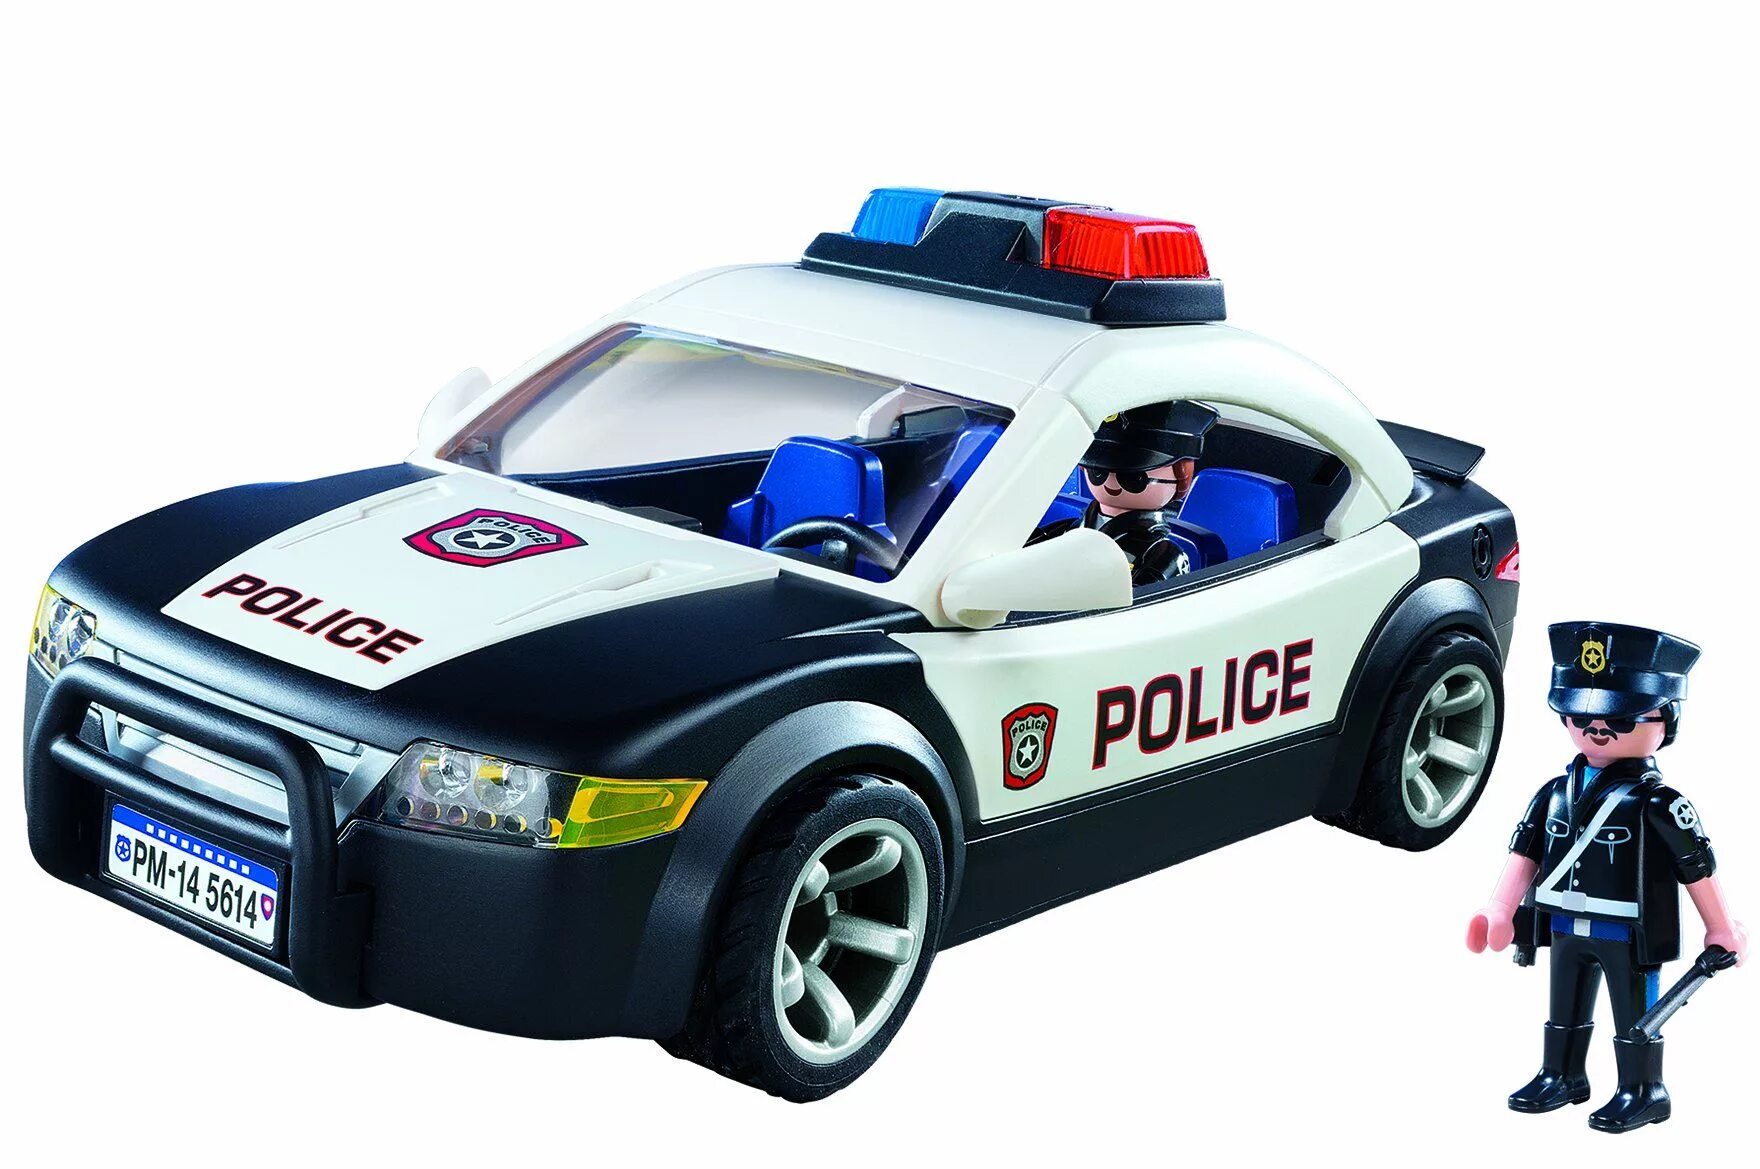 Картинка полиция машина. Плеймобил полицейский автомобиль 5673. Плеймобиль полиция полиц маш. Playmobil Polizei машинка полиция. Playmobil City Action Police car 5673.